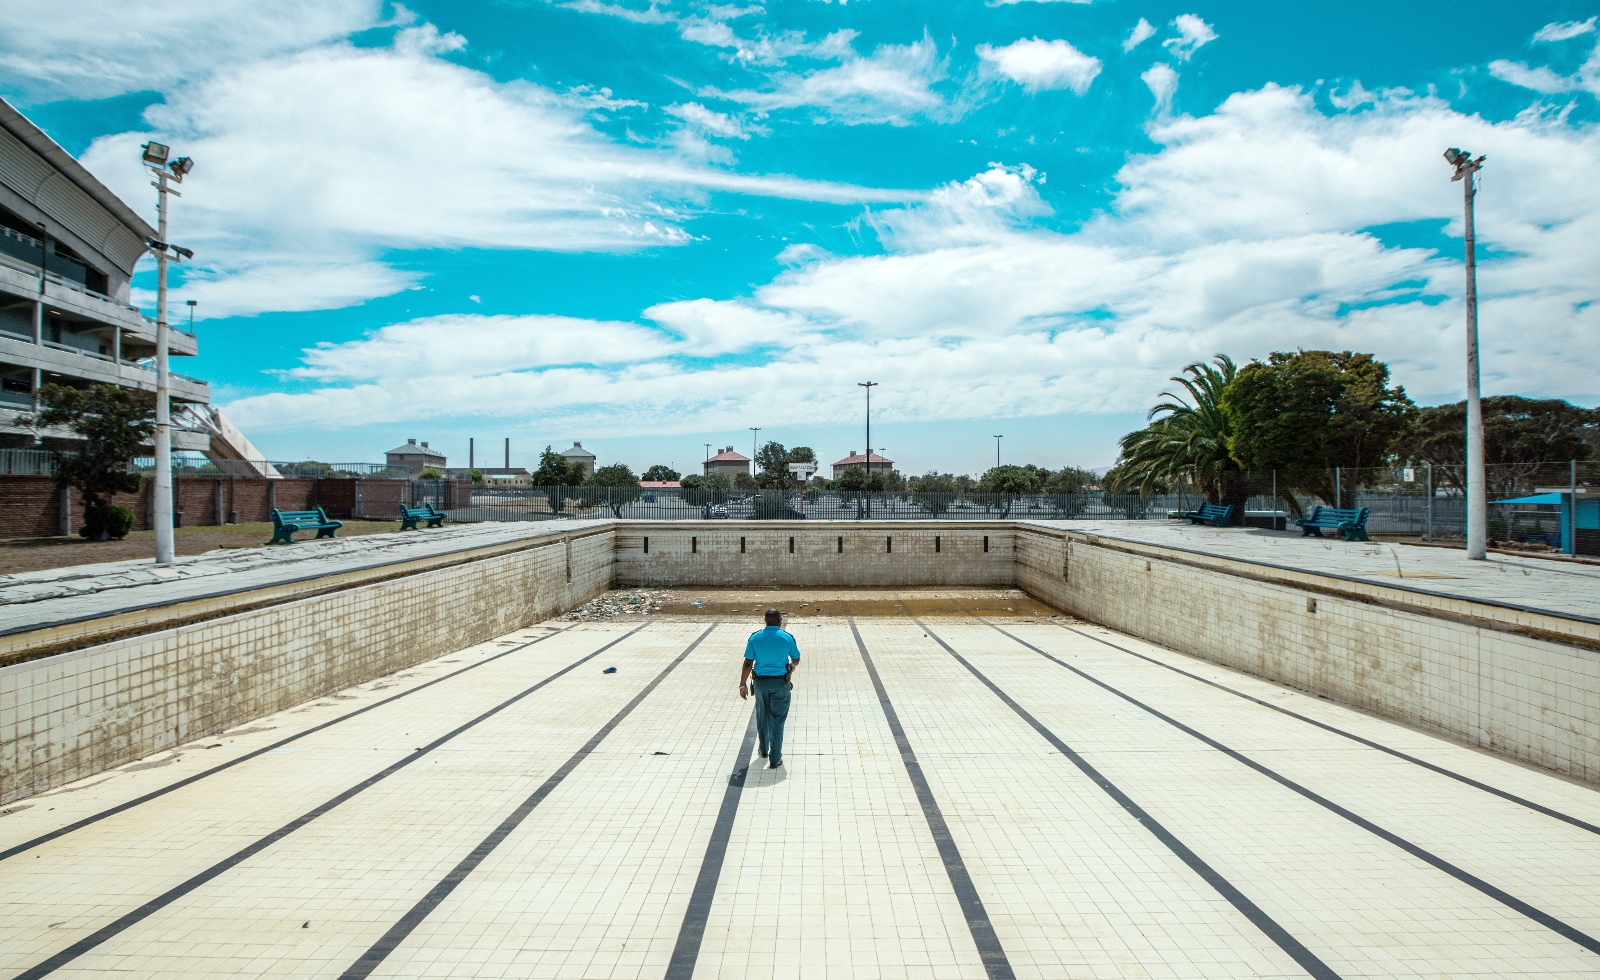 Un policier inspecte une piscine publique vide au Cap, en Afrique du Sud.  Le gouvernement de la ville a réussi à surmonter une crise de sécheresse en 2018 en réduisant la consommation d'eau domestique à un niveau sans précédent.